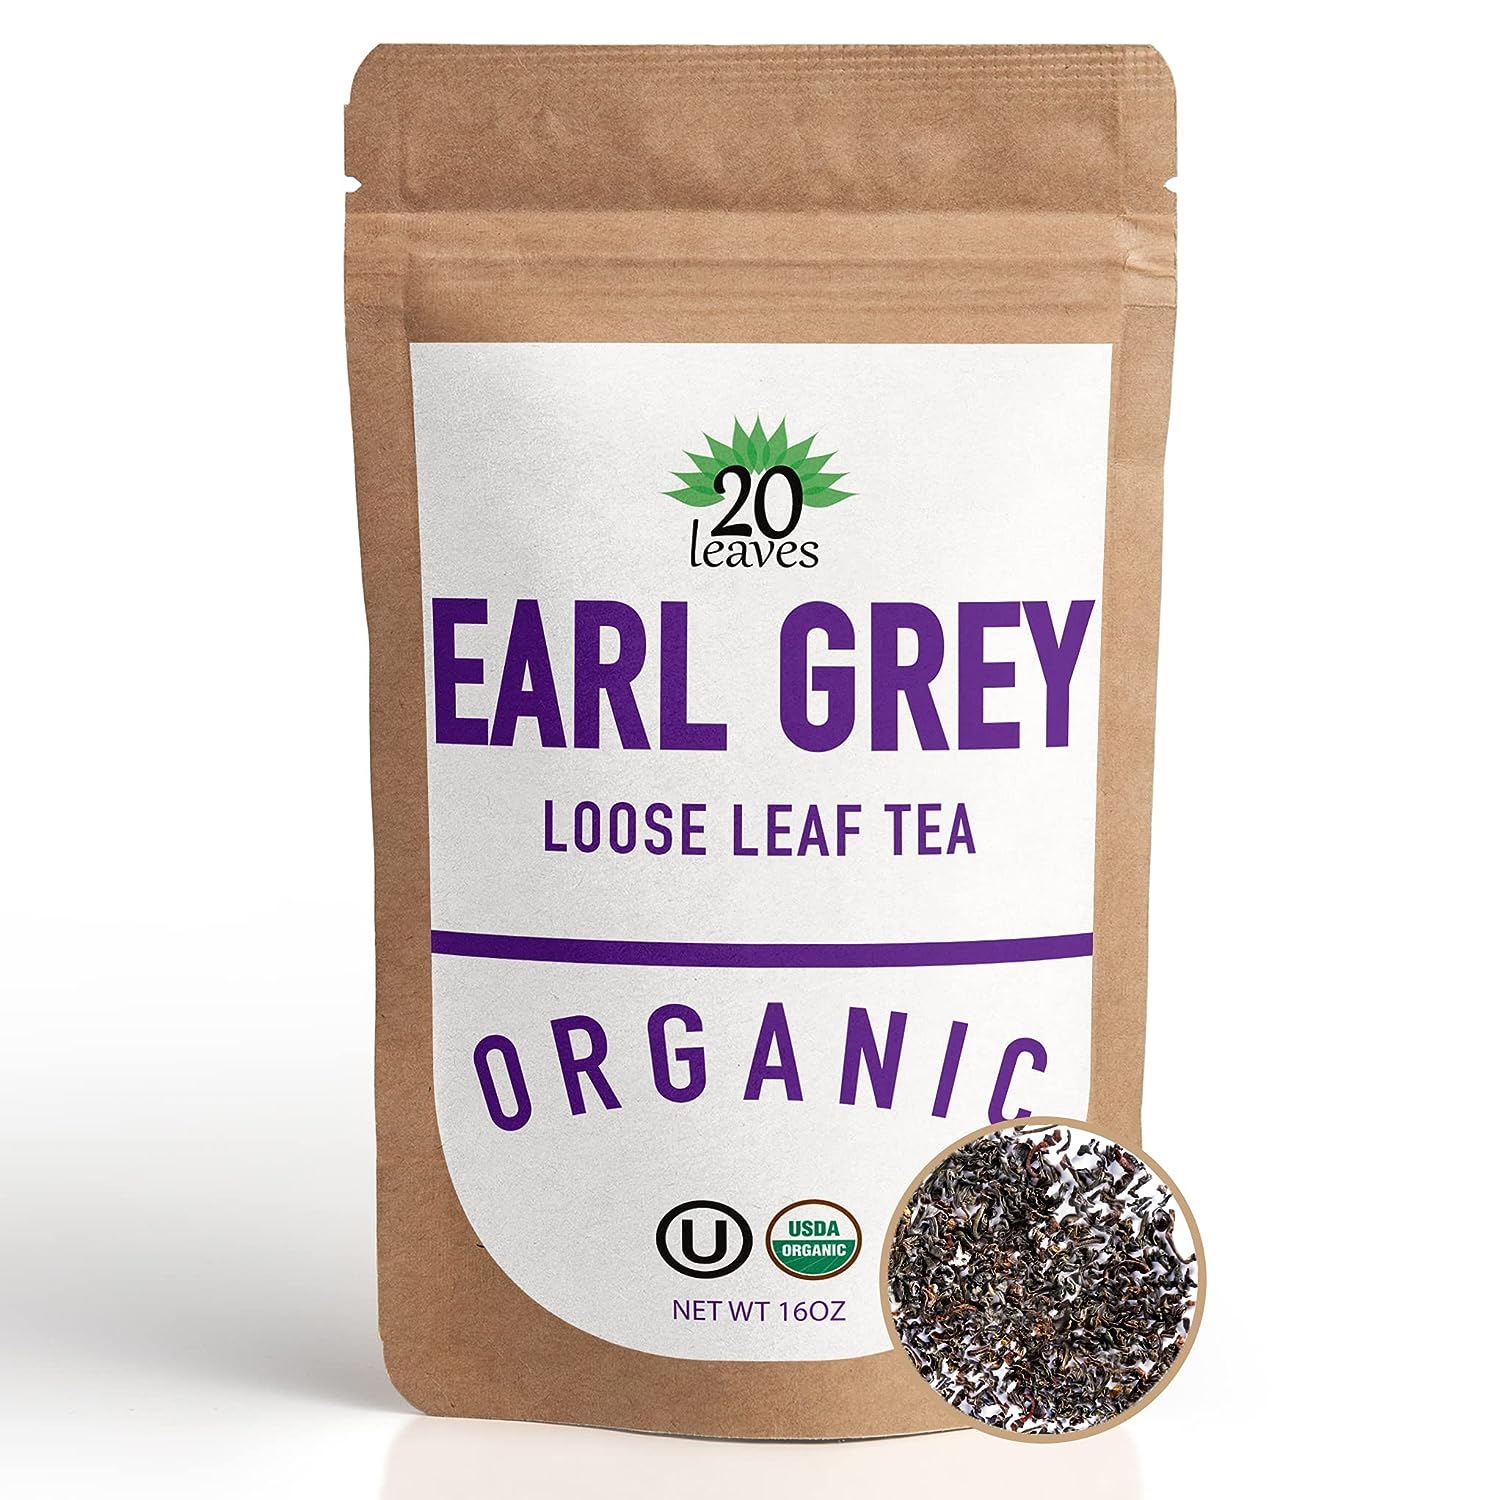 Earl Grey Loose Leaf Black Tea - 100% Certified Organic - Resealable Kraft Bag - 1 Pack